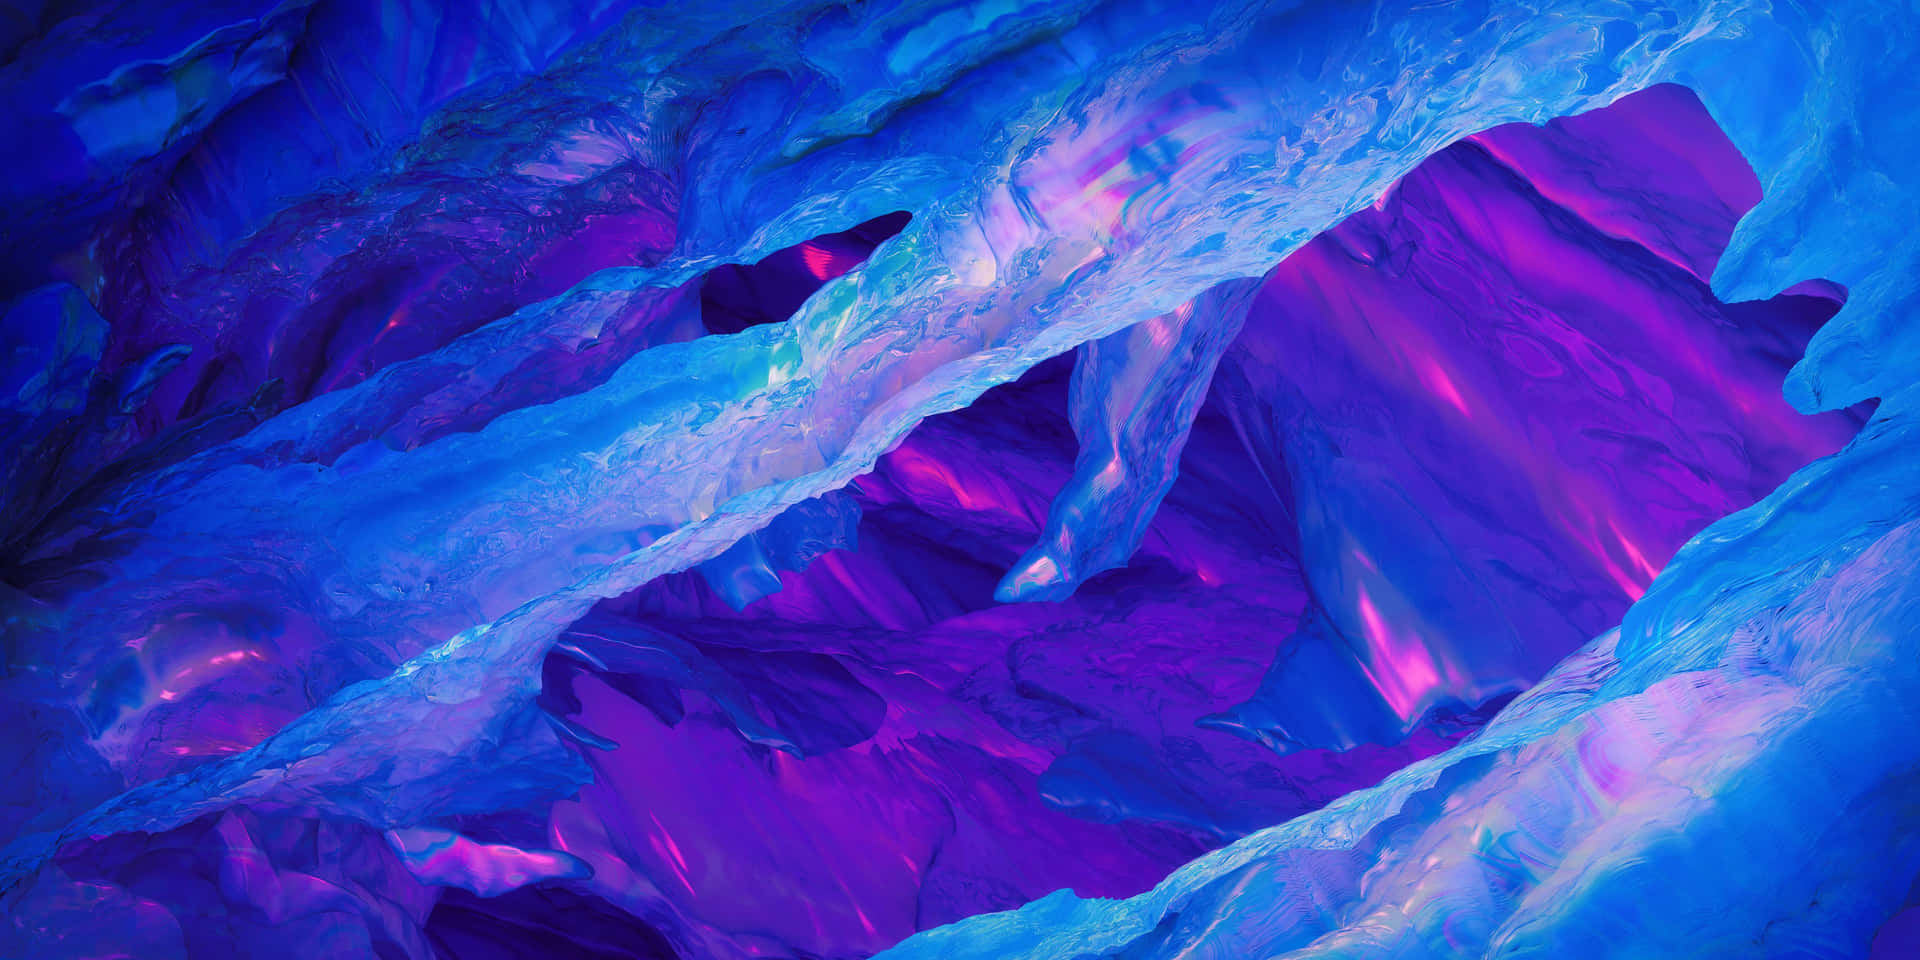 Einefaszinierende Kombination Aus Blauem Und Pinkem Neon Erzeugt Ein Ästhetisch Ansprechendes Kunstwerk. Wallpaper